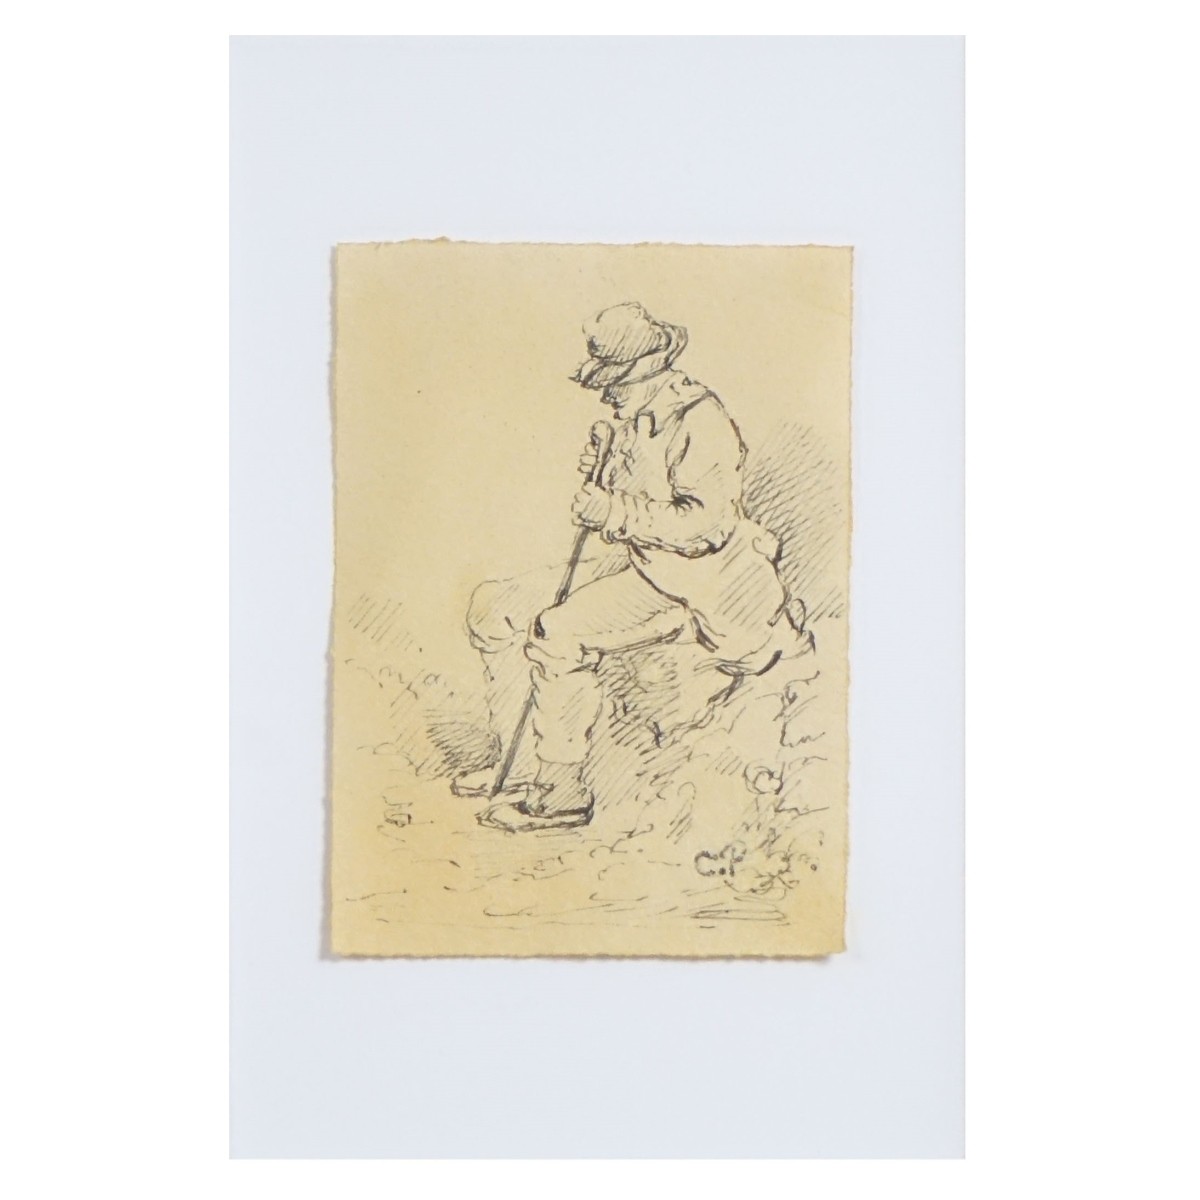 Attrib: Camille Pissarro (1830 - 1903)